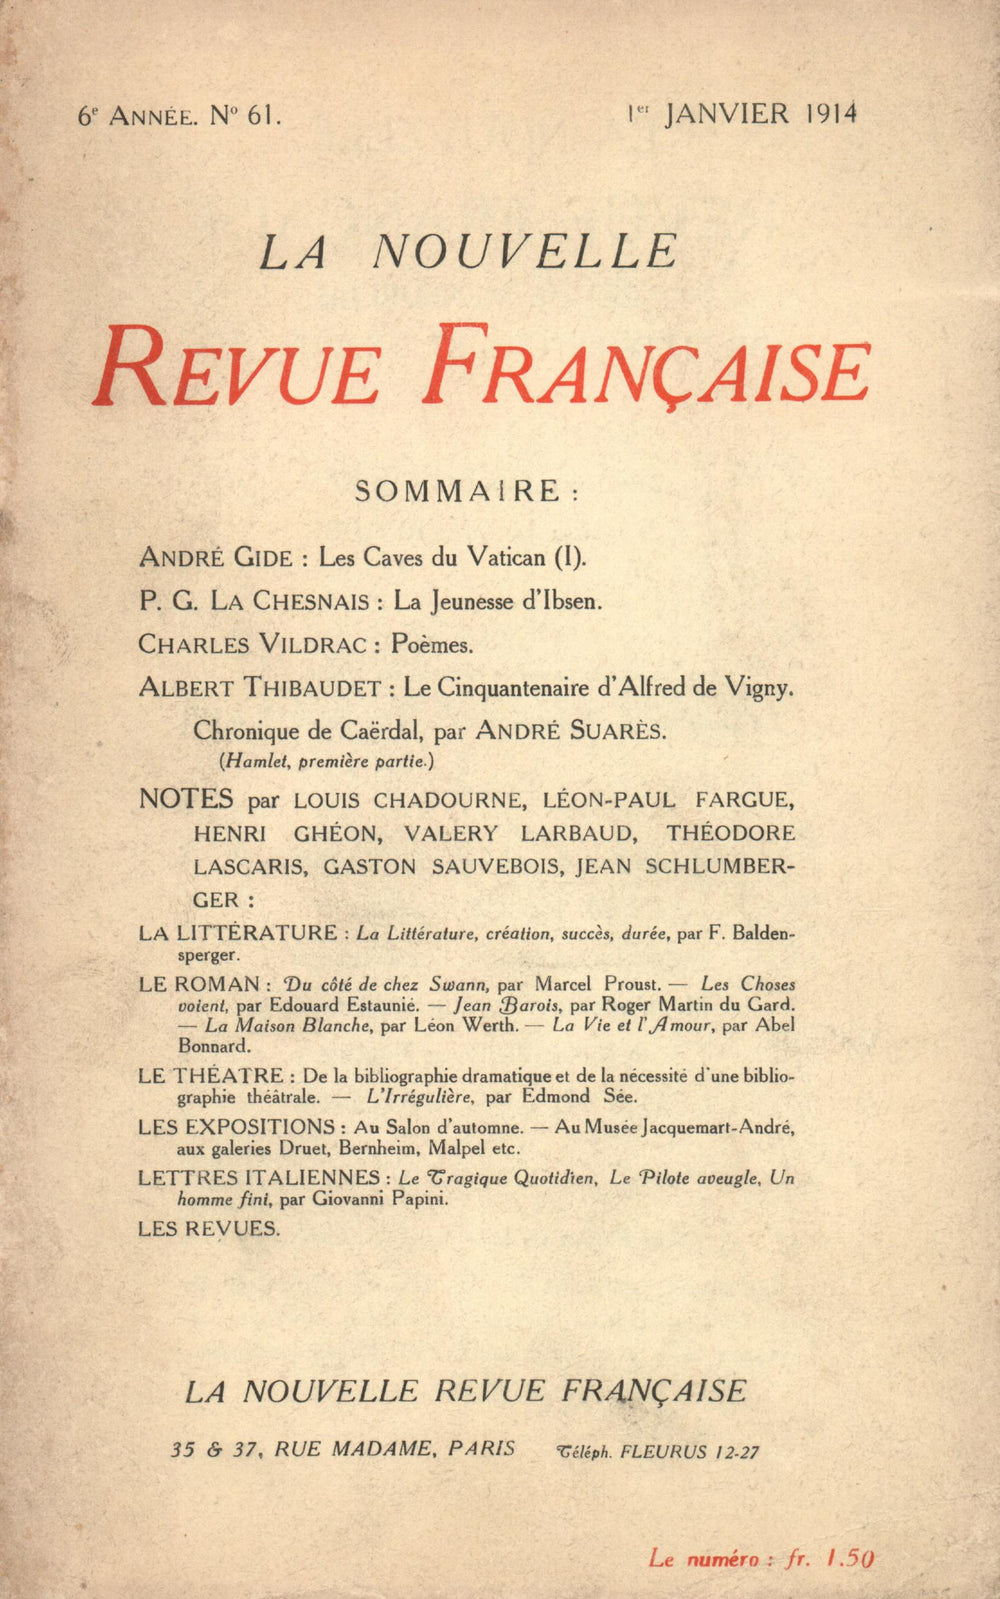 La Nouvelle Revue Française N' 61 (Janvier 1914)